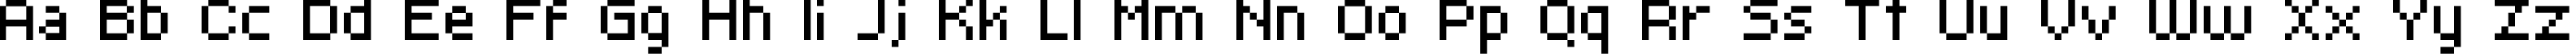 Пример написания английского алфавита шрифтом kroeger 06_55